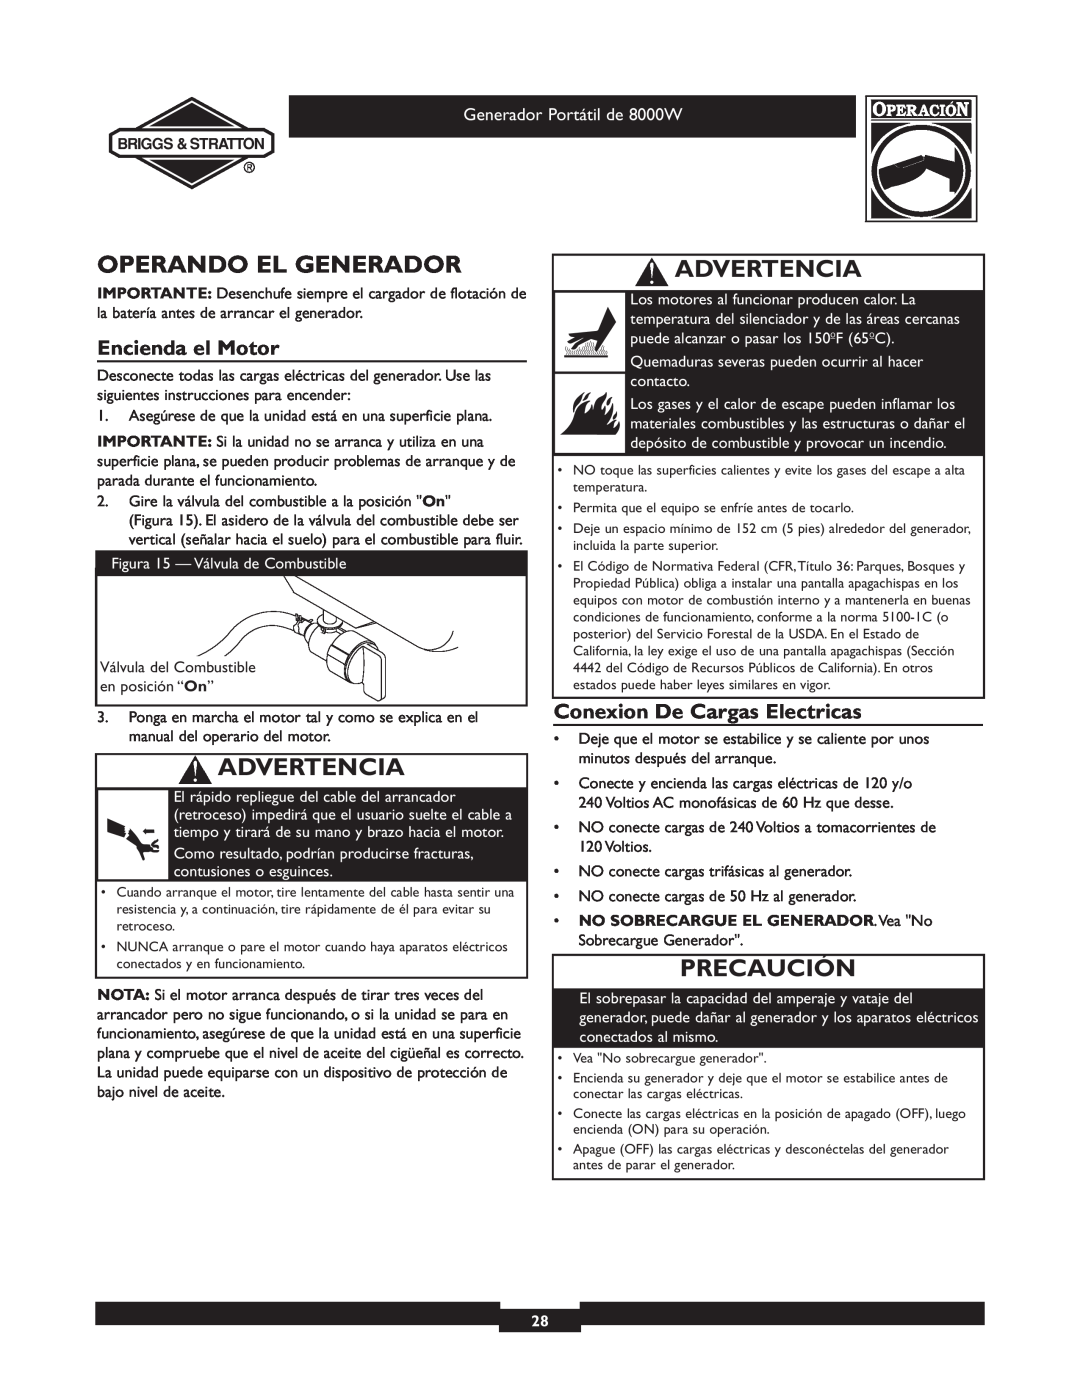 Briggs & Stratton 030210-2 manual Operando El Generador, Encienda el Motor, Conexion De Cargas Electricas, Advertencia 